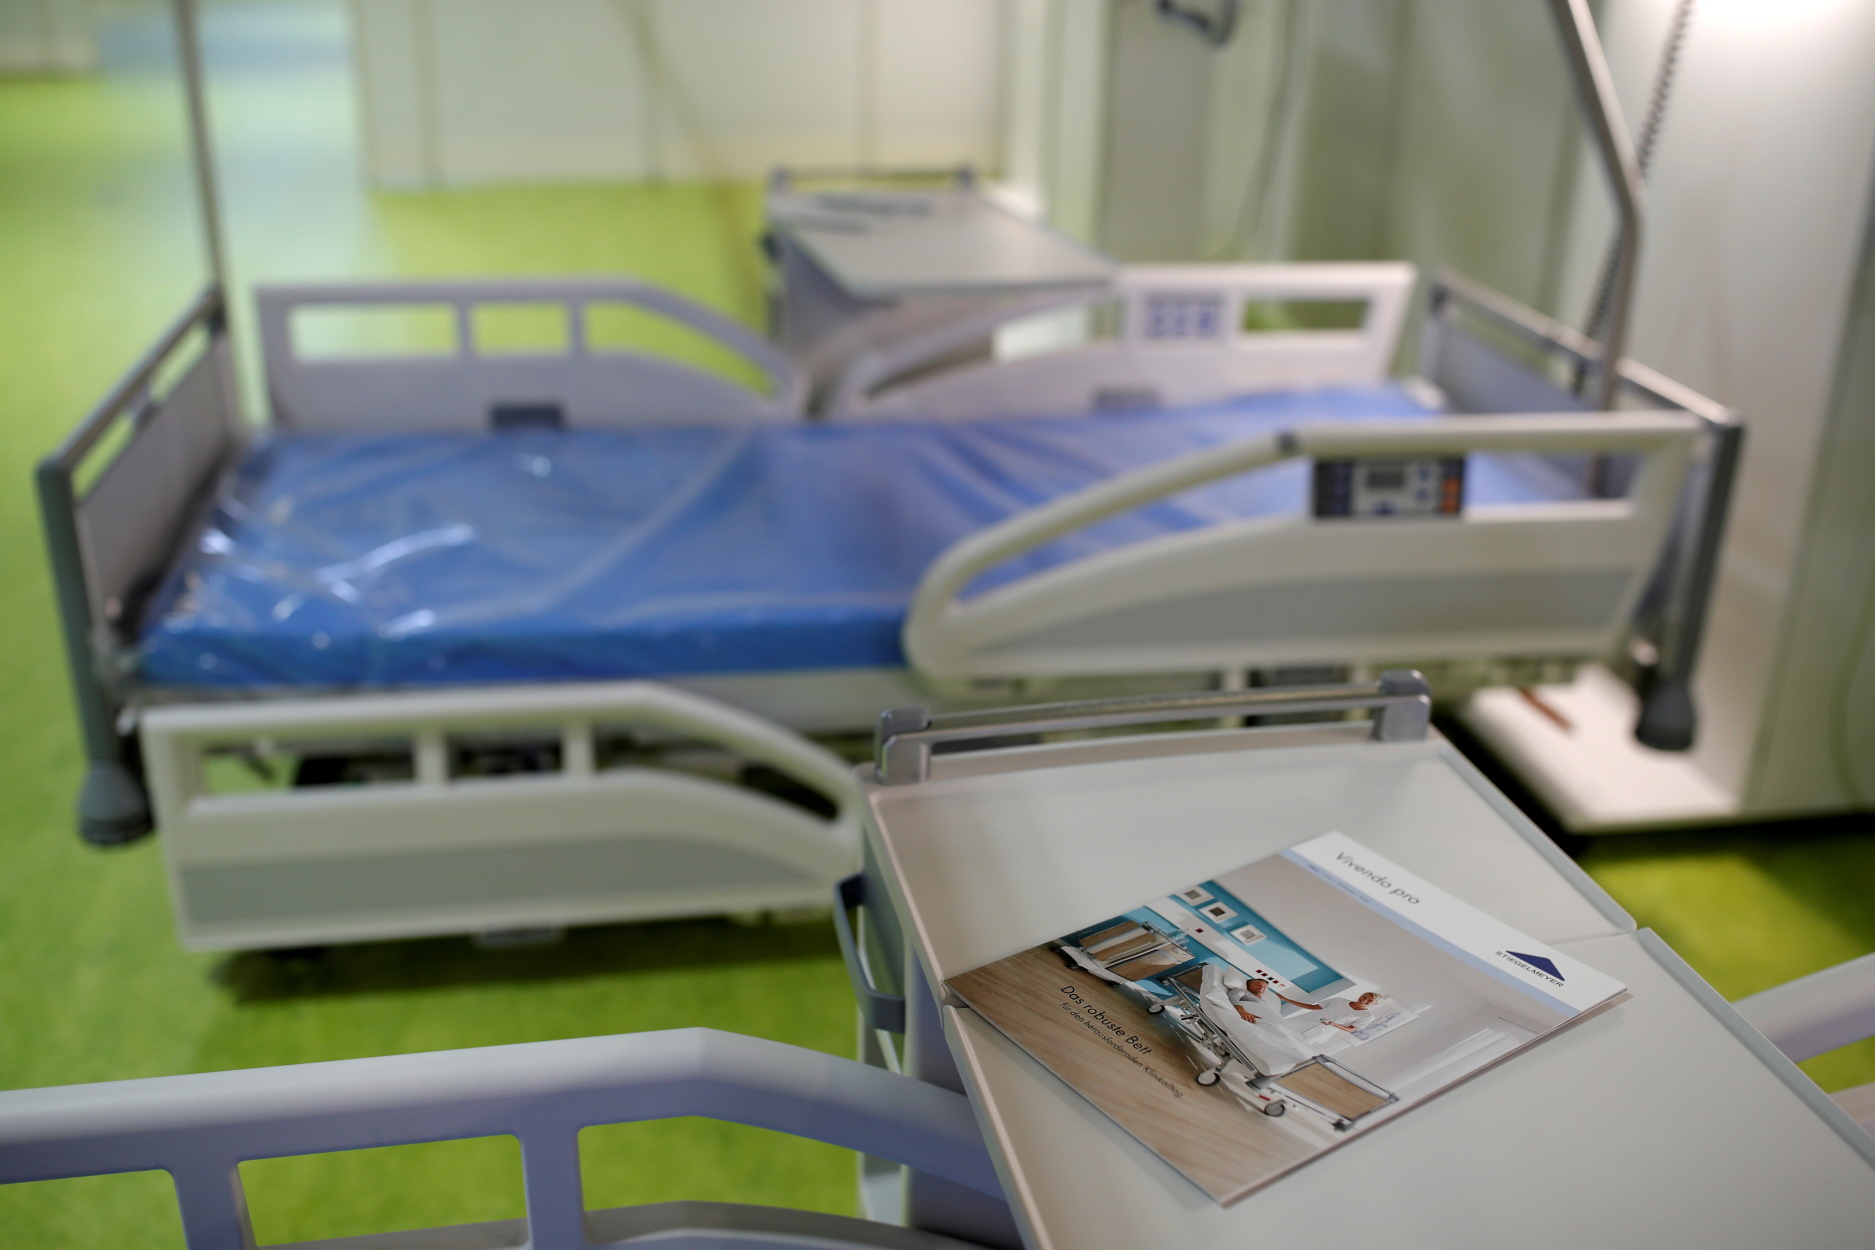 Γερμανία: Ετοιμάζονται για το νέο κύμα κορονοϊού! Άδειες αίθουσες γίνονται νοσοκομεία